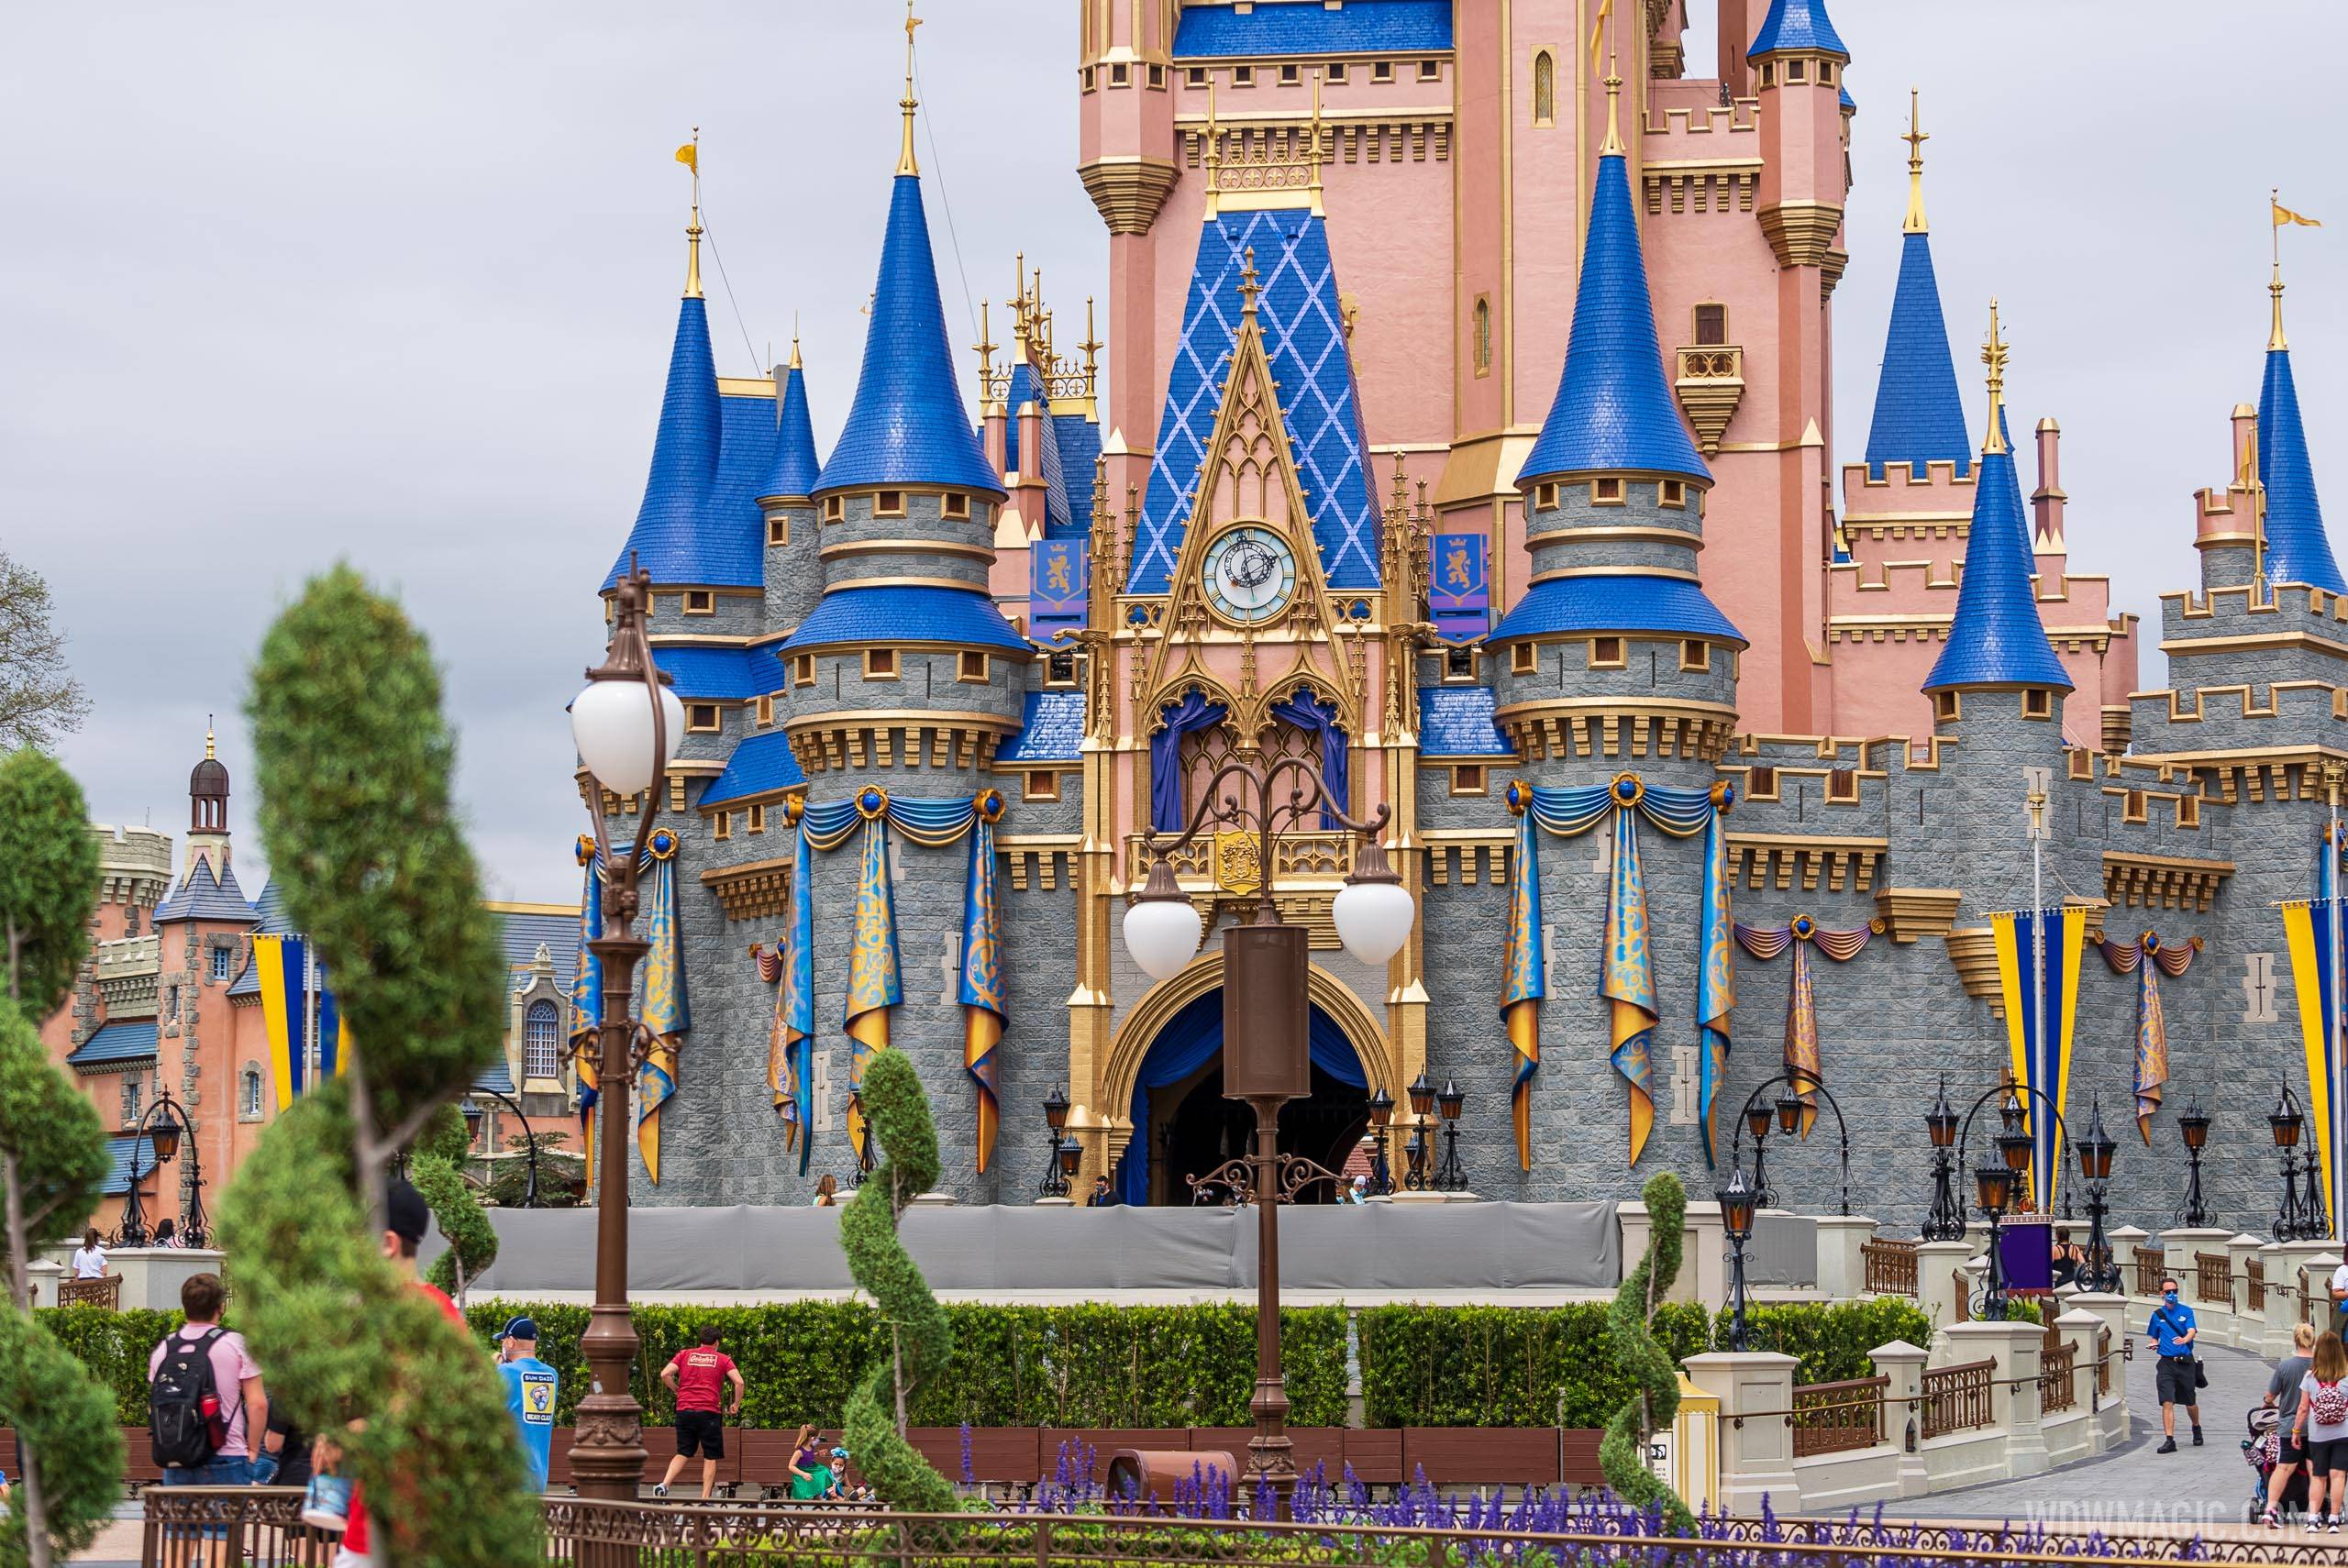 50th anniversary Cinderella Castle additions - April 1 2021